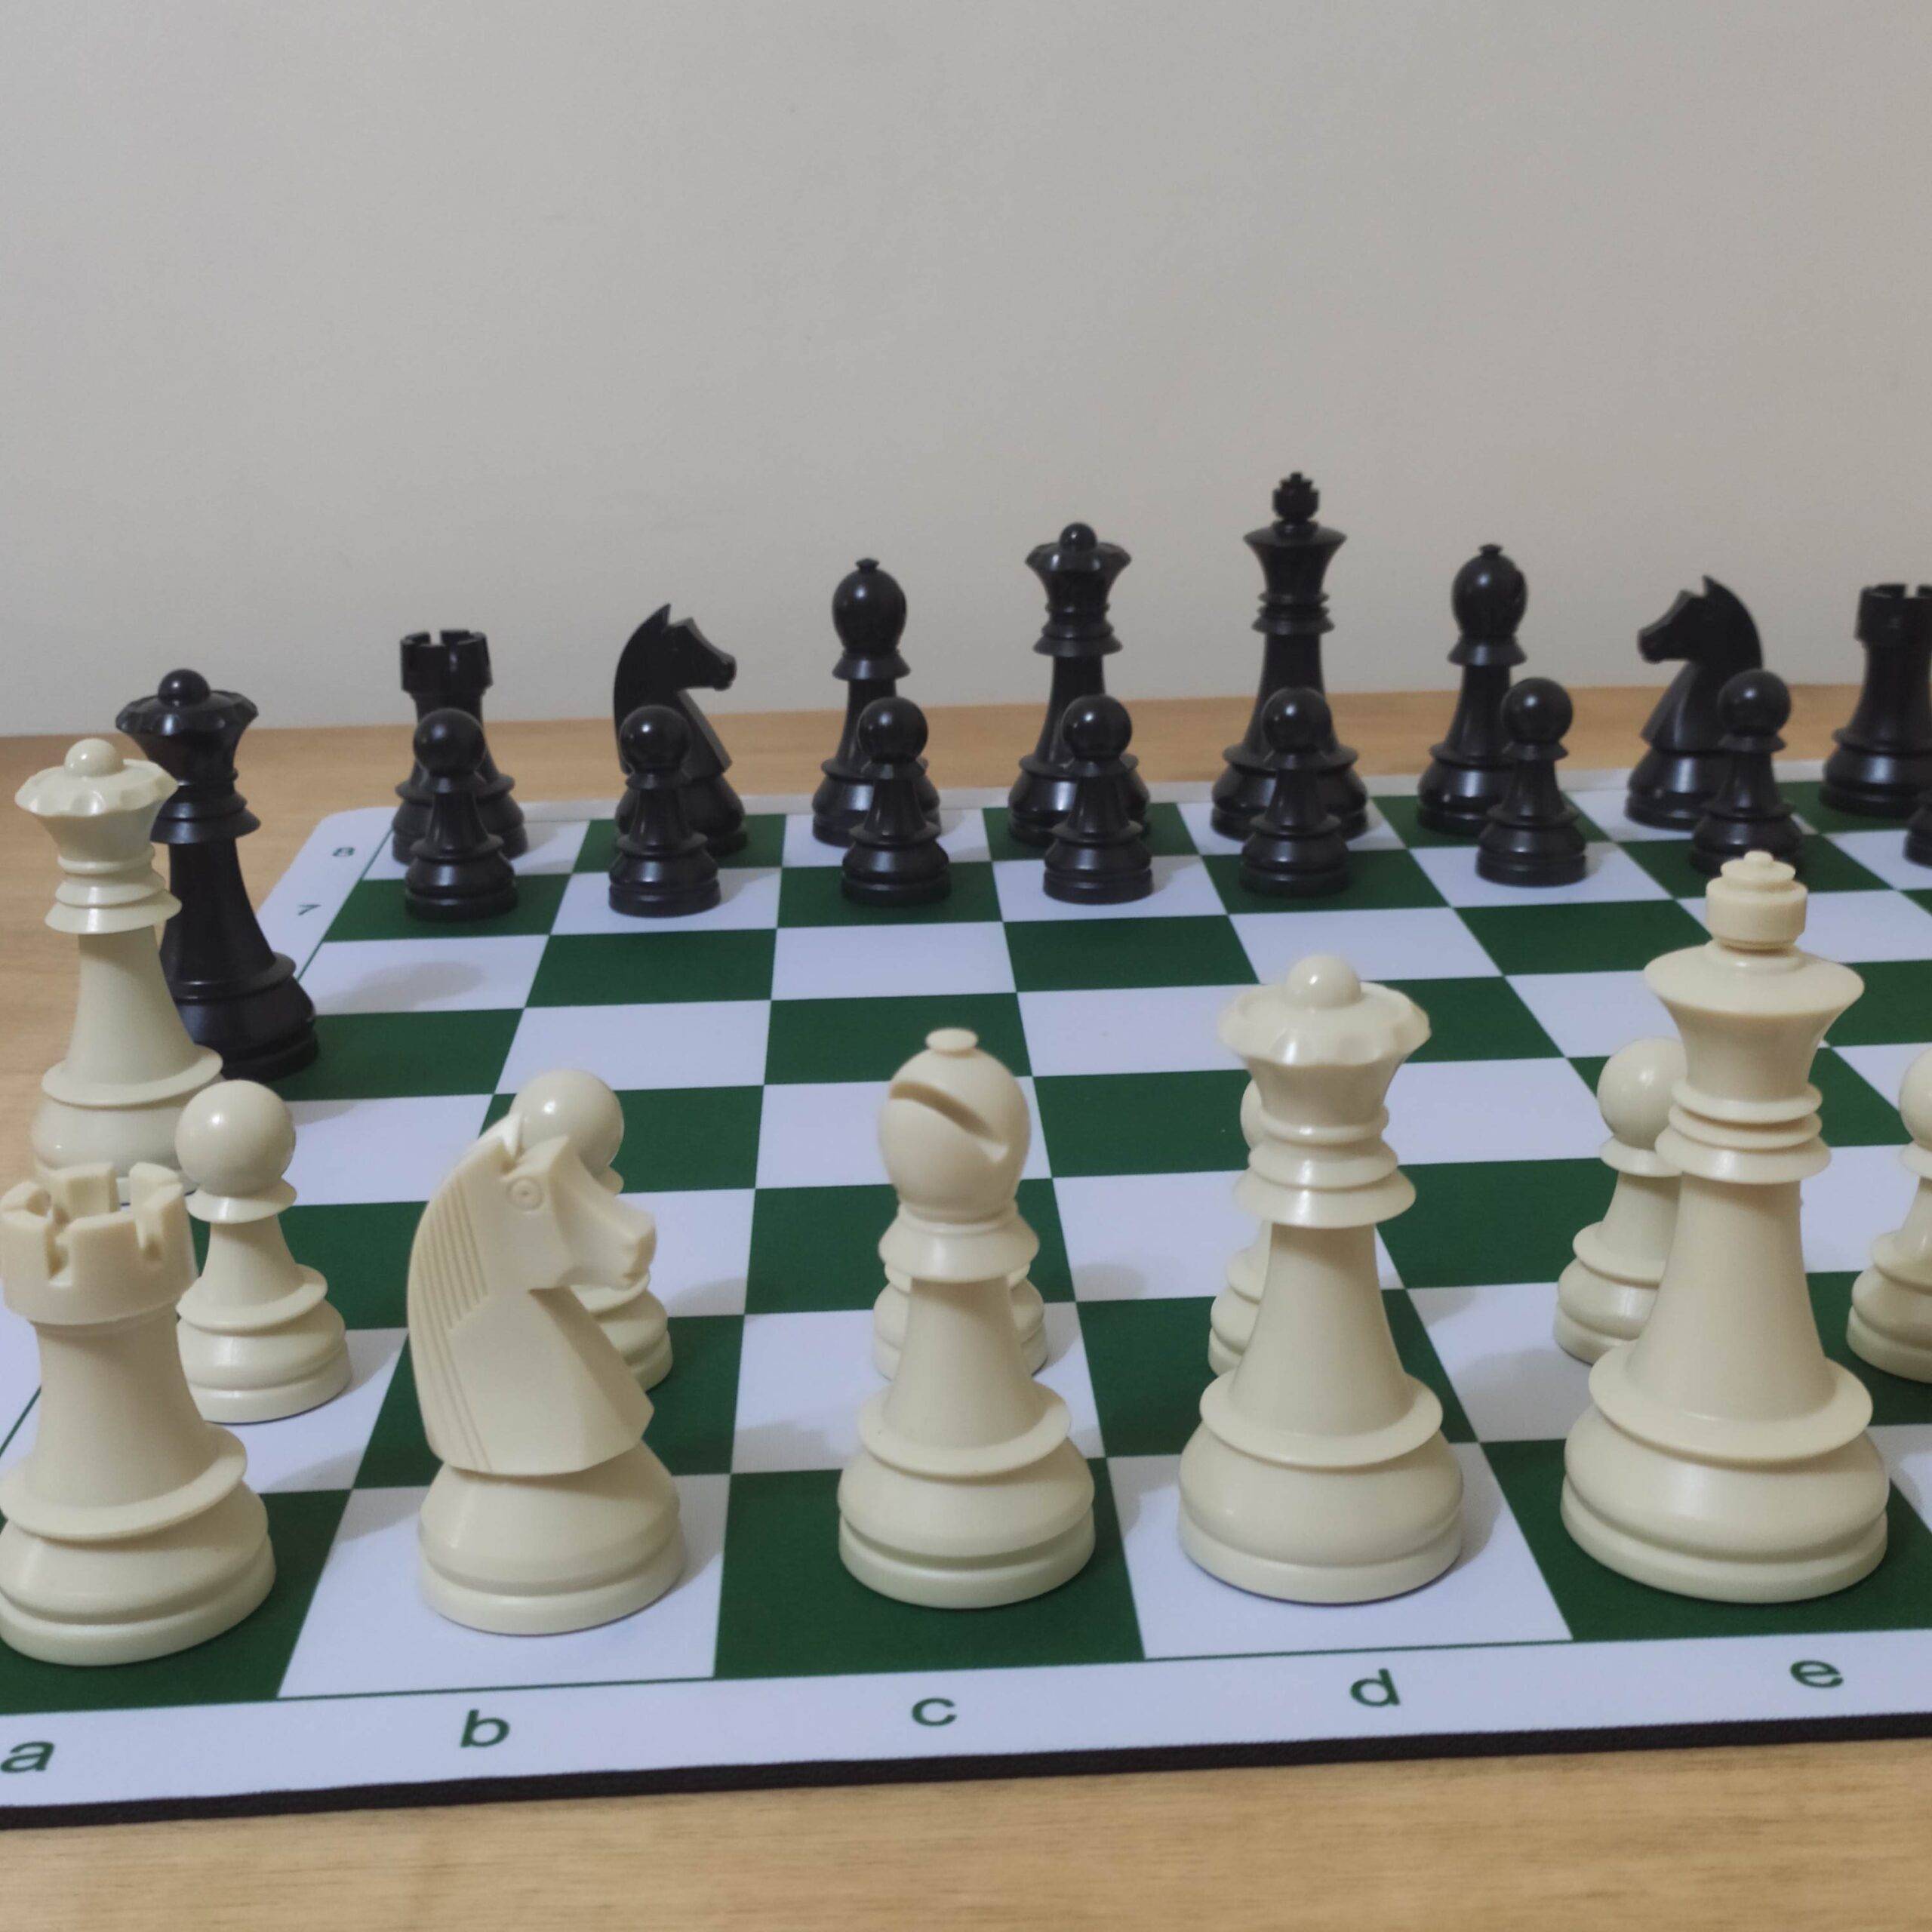 Kit Jogo de xadrez completo + Relógio Digital PQ9907S – Jadoube